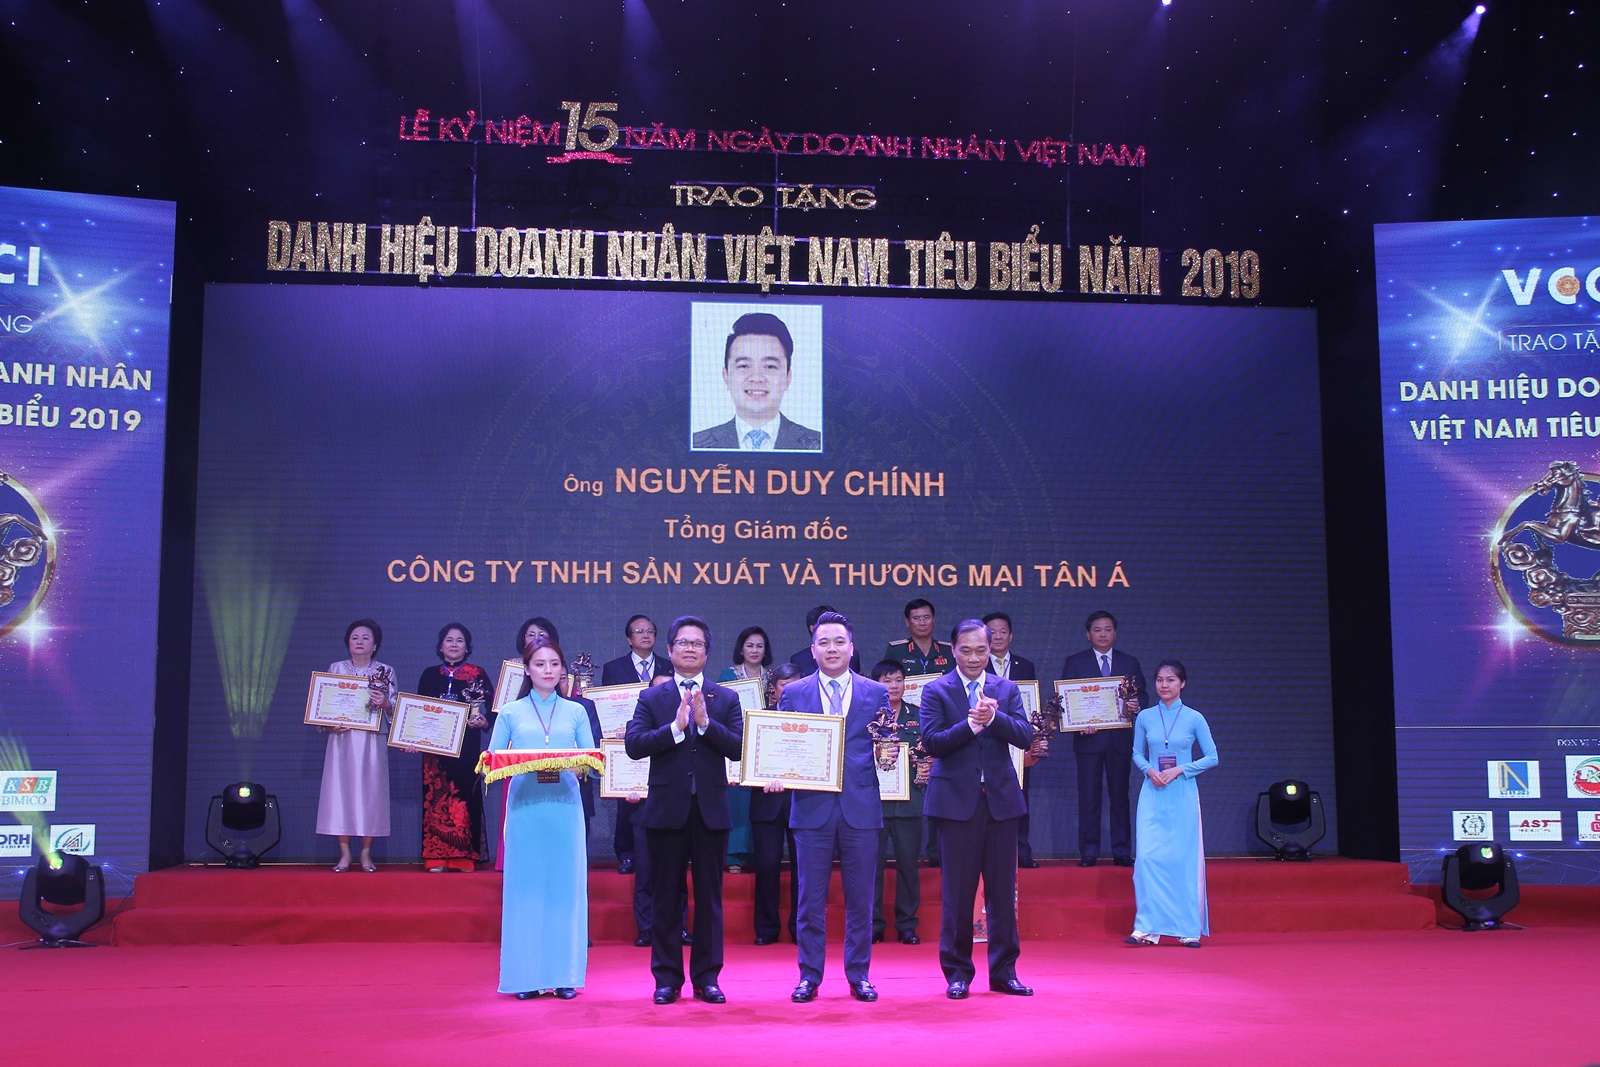 Ông Nguyễn Duy Chính – Tổng giám đốc Tân Á Đại Thành nhận bằng chứng nhận Doanh nhân Việt Nam tiêu biểu – Cúp Thánh Gióng 2019